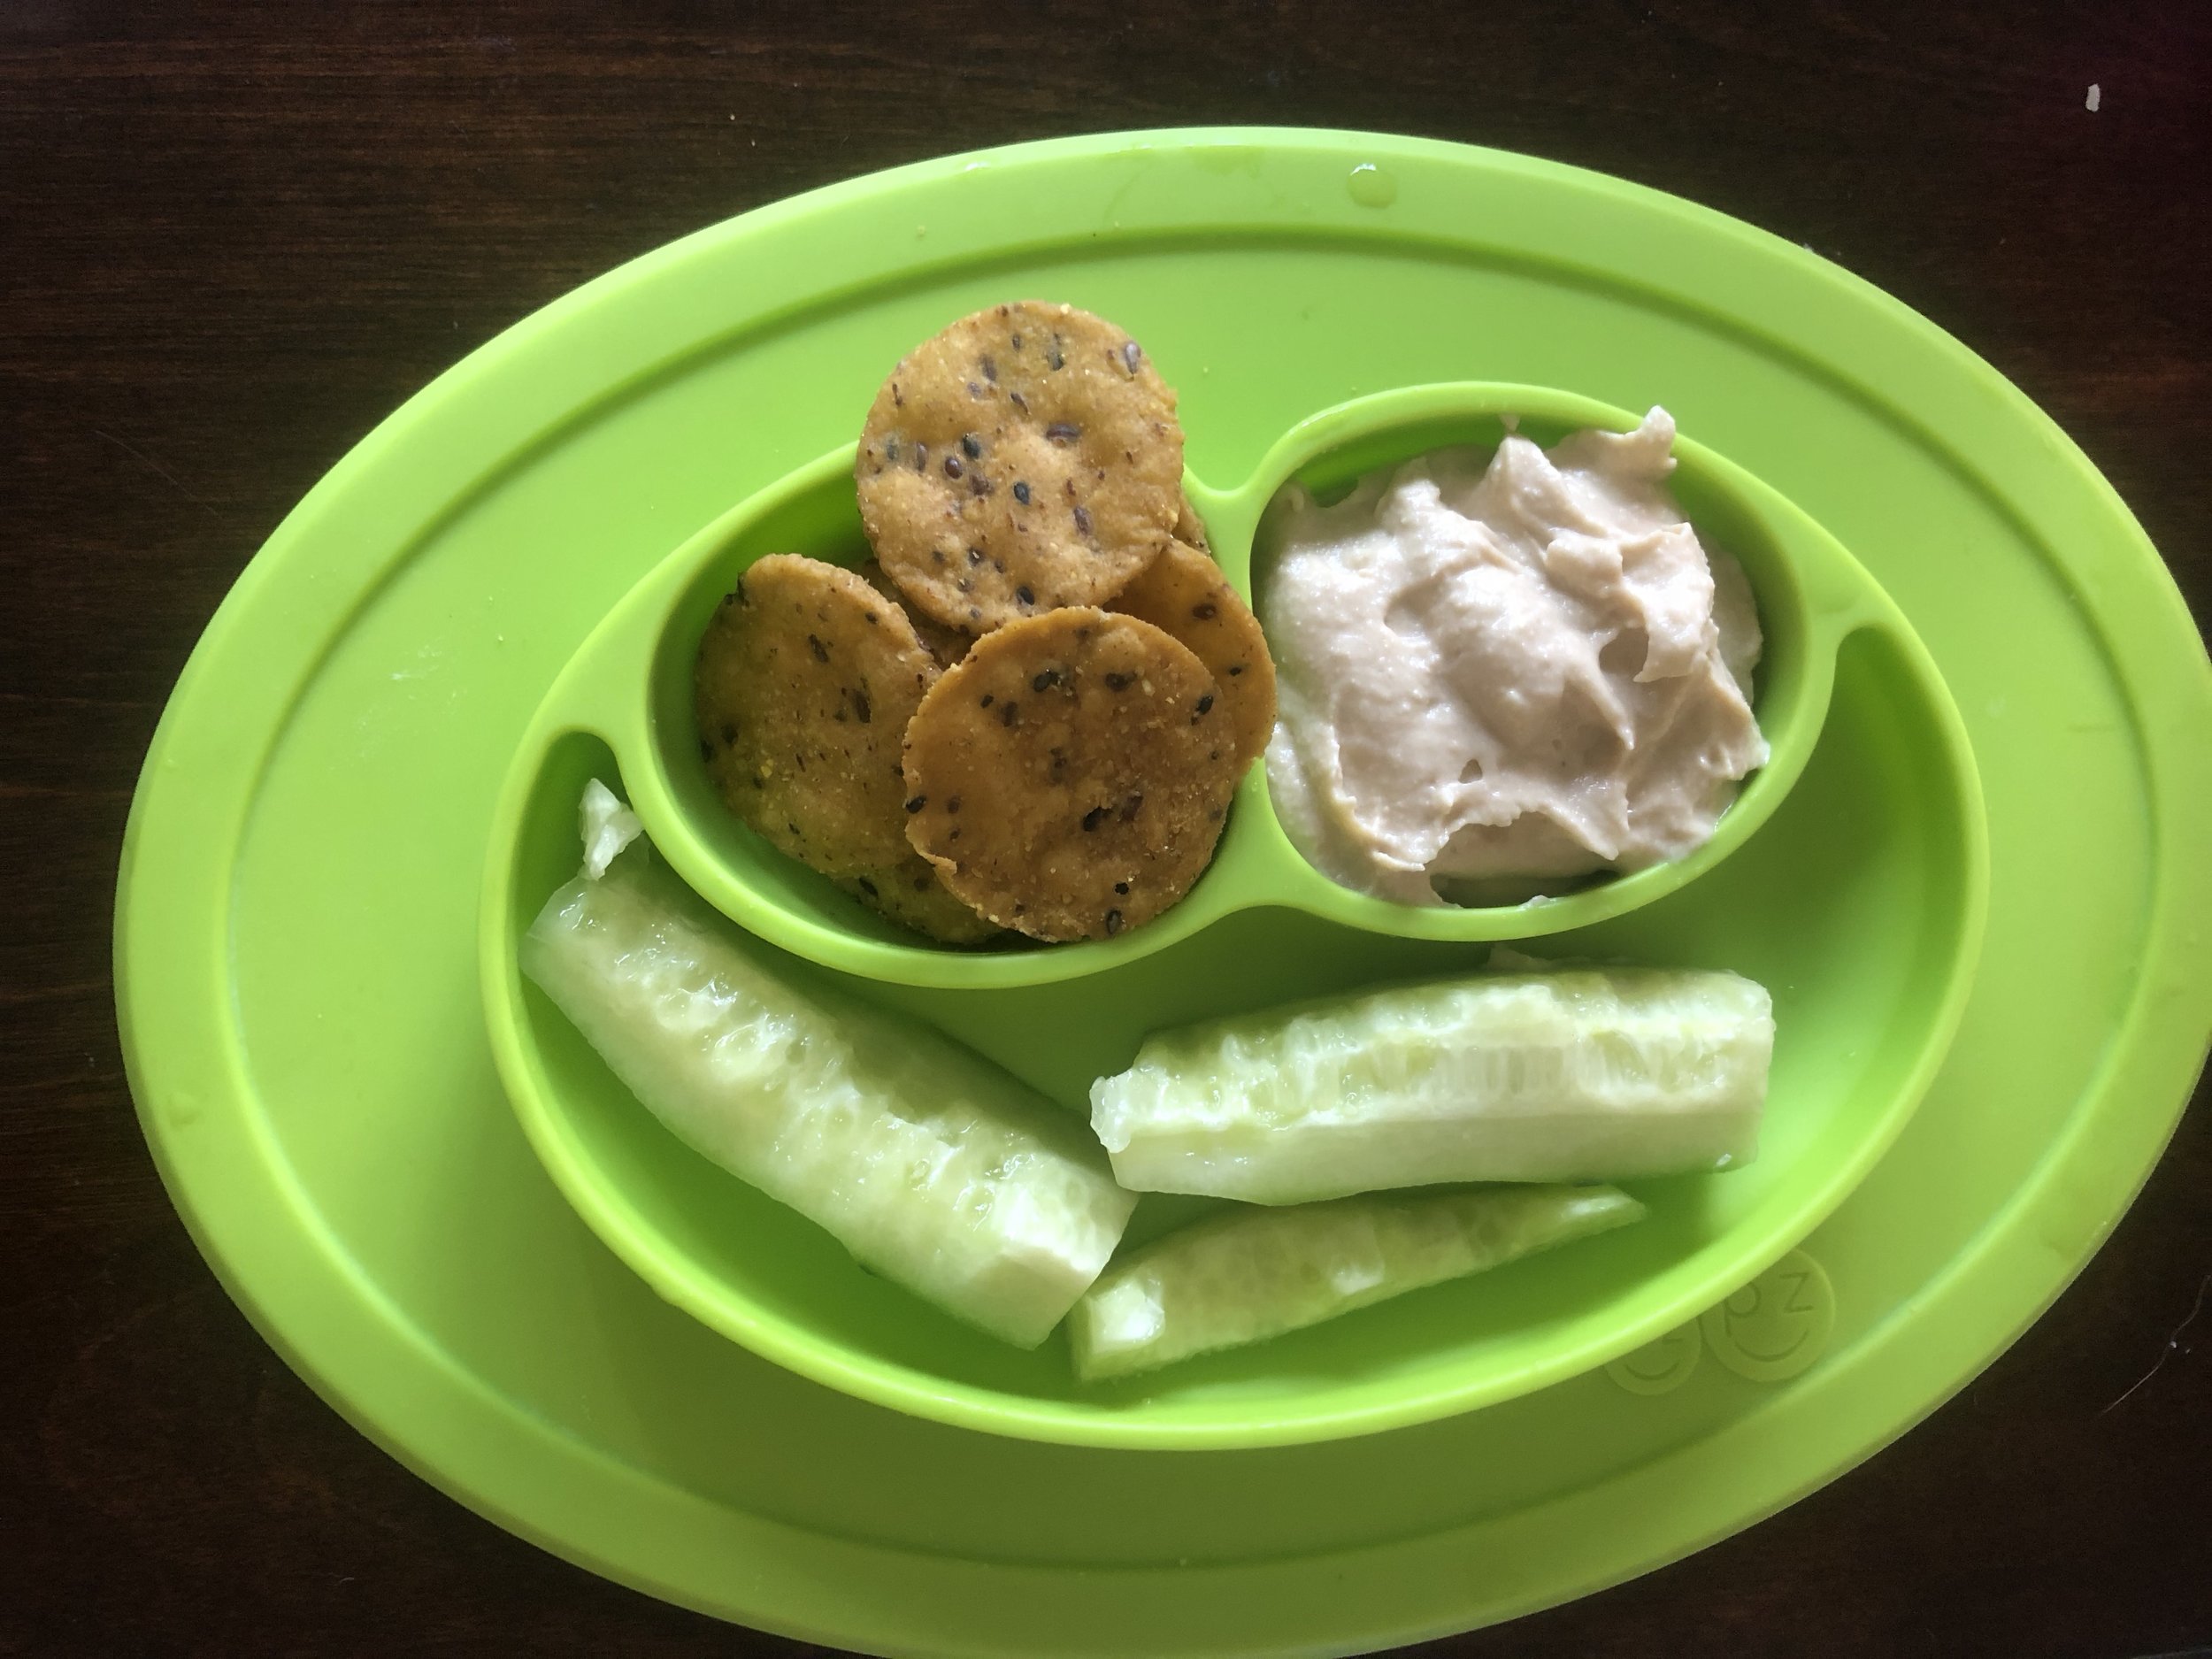 sweet potato crackers, garlic hummus and cucumbers